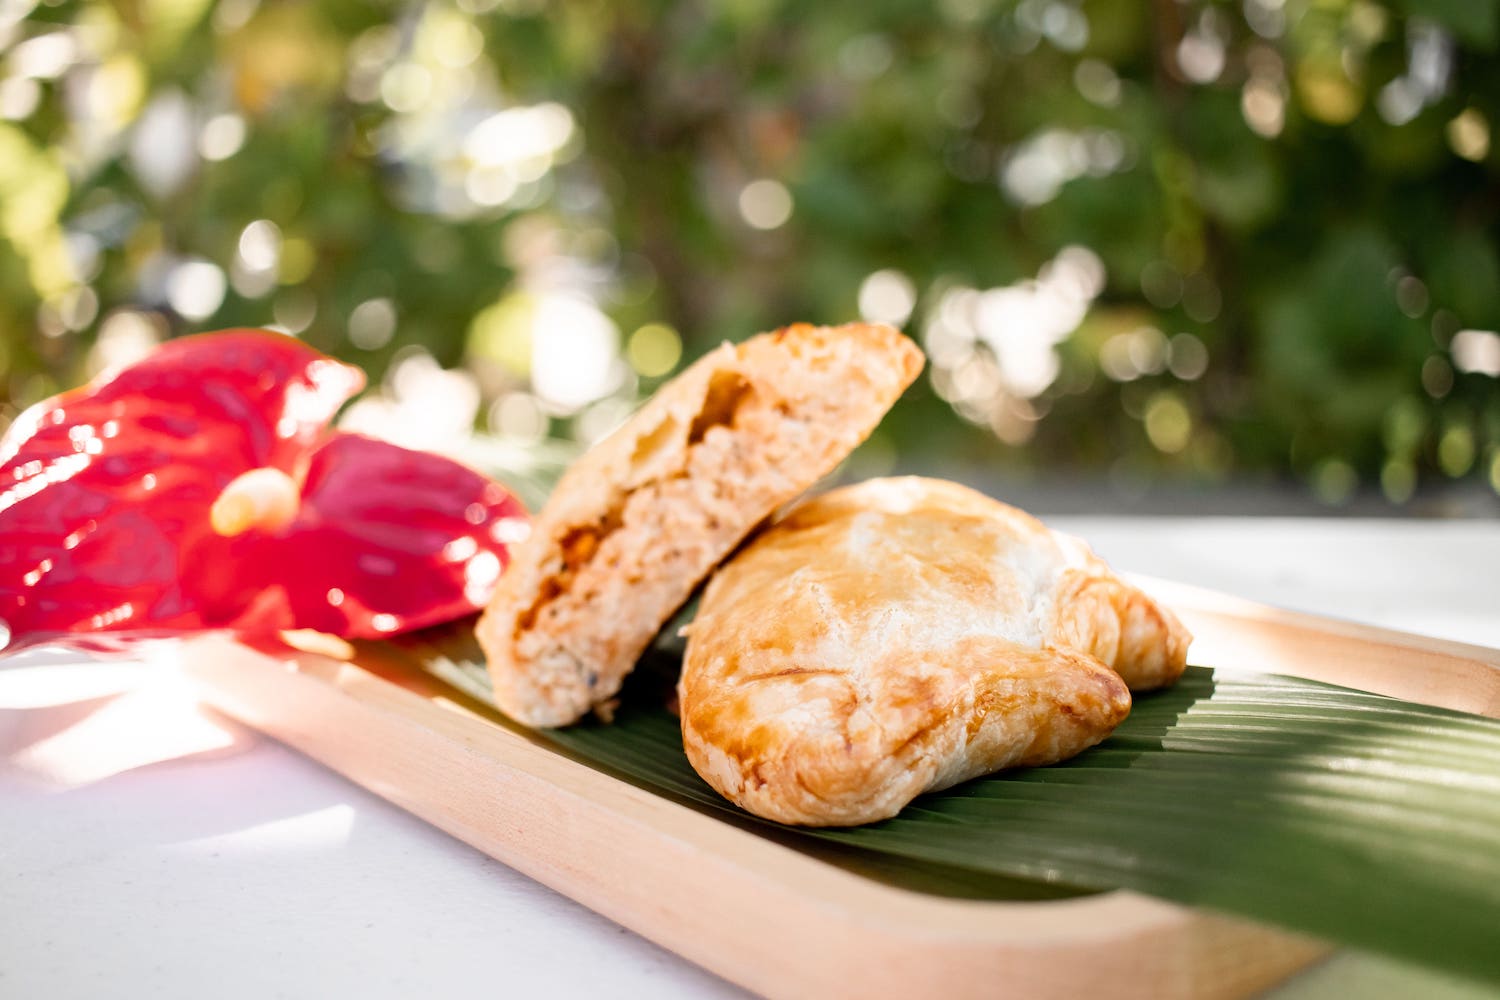 Honolulu Coffee seasonal menu item: Turkey Cheddar Handpie